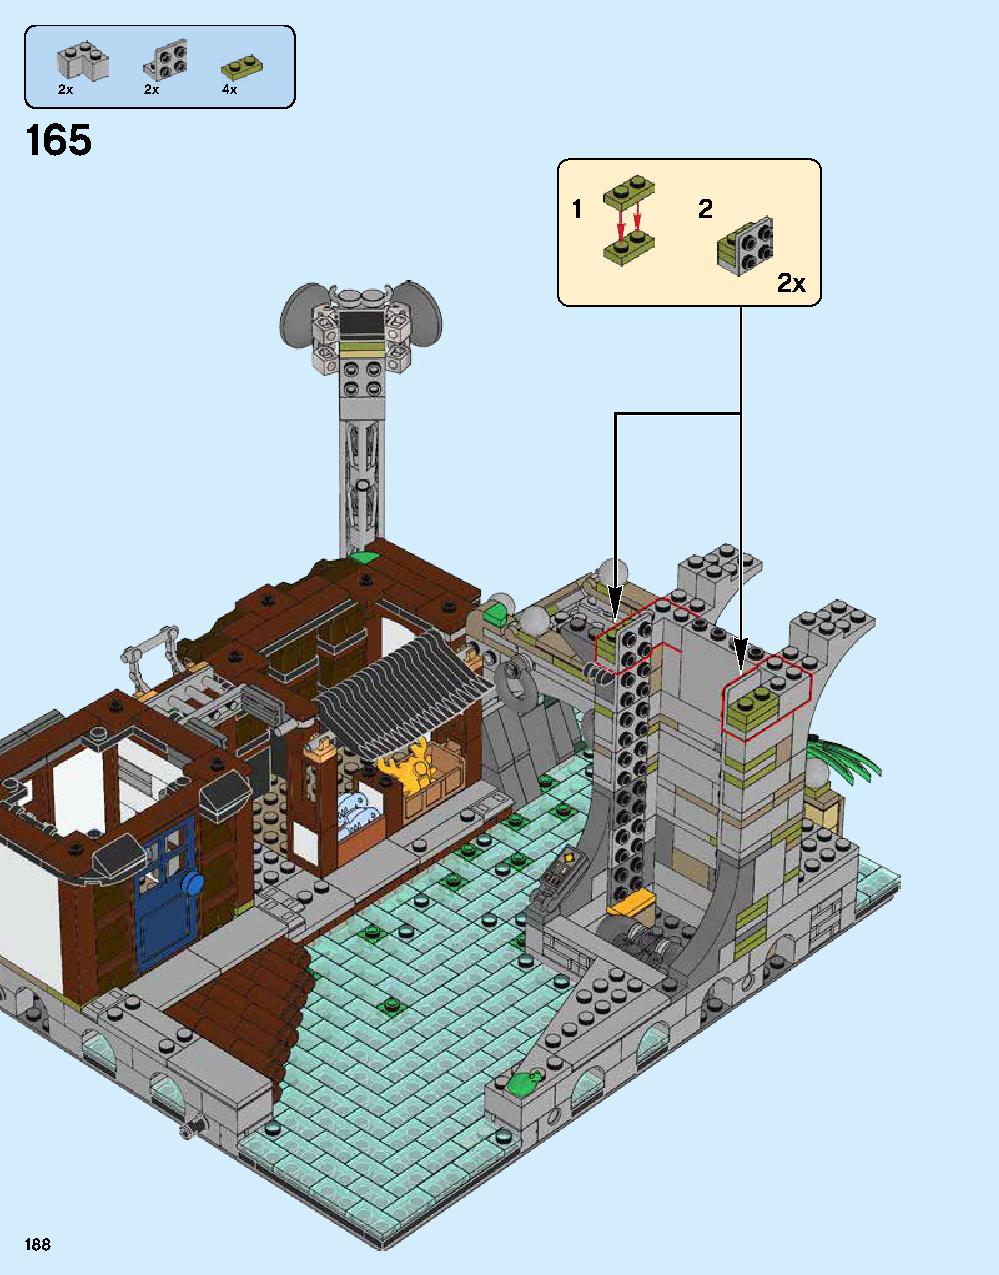 ニンジャゴー シティ 70620 レゴの商品情報 レゴの説明書・組立方法 188 page